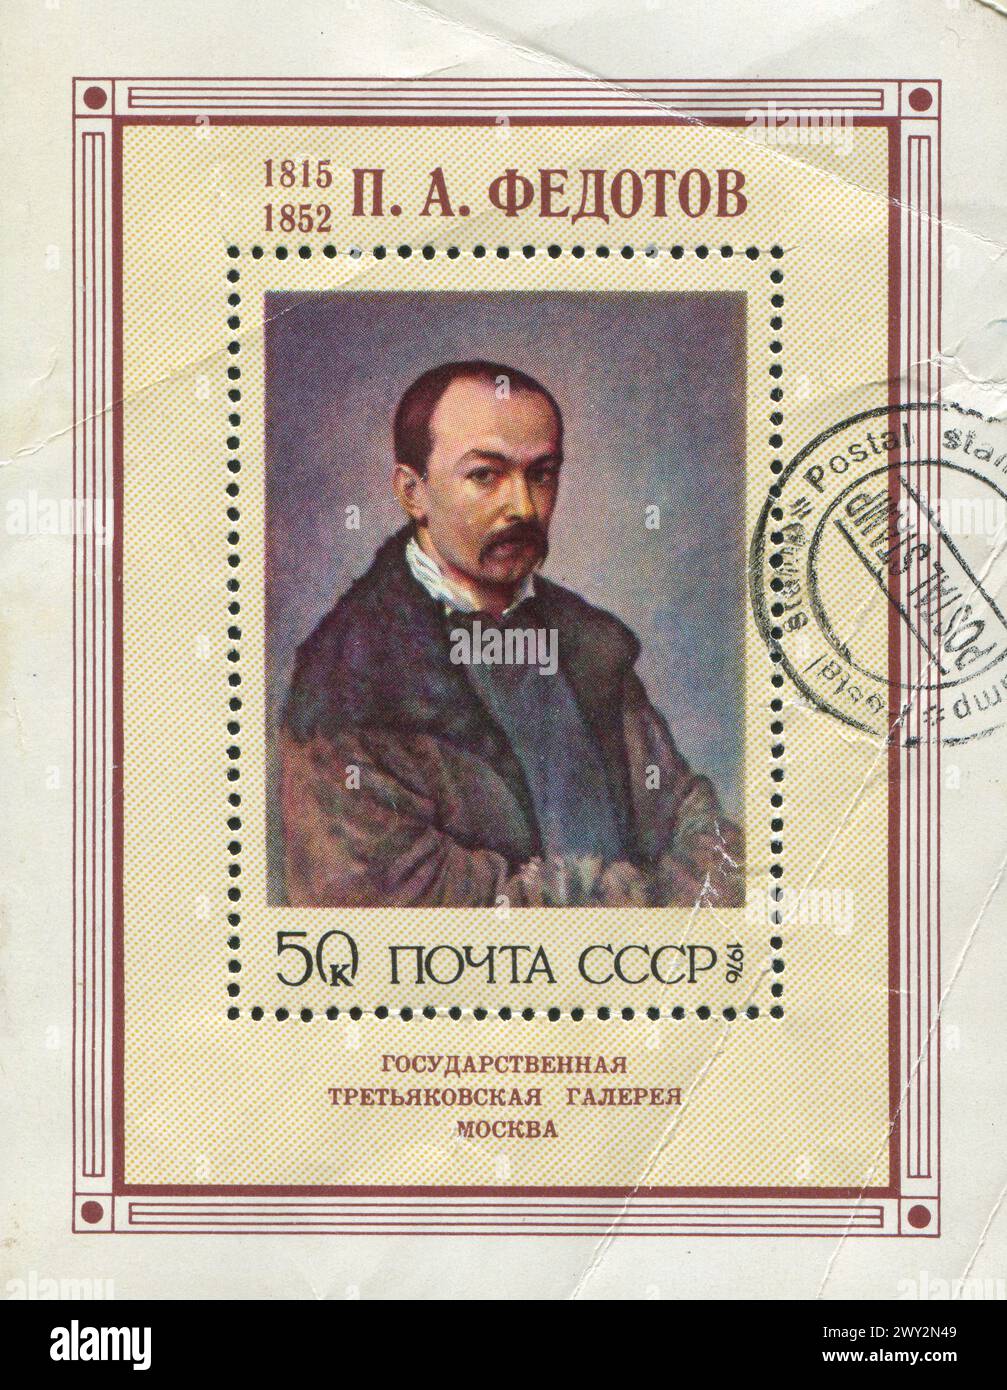 RUSSIE - VERS 1976 : timbre imprimé par la Russie, montre Autoportrait de Pavel Andreevitch Fedotov, vers 1976 Banque D'Images